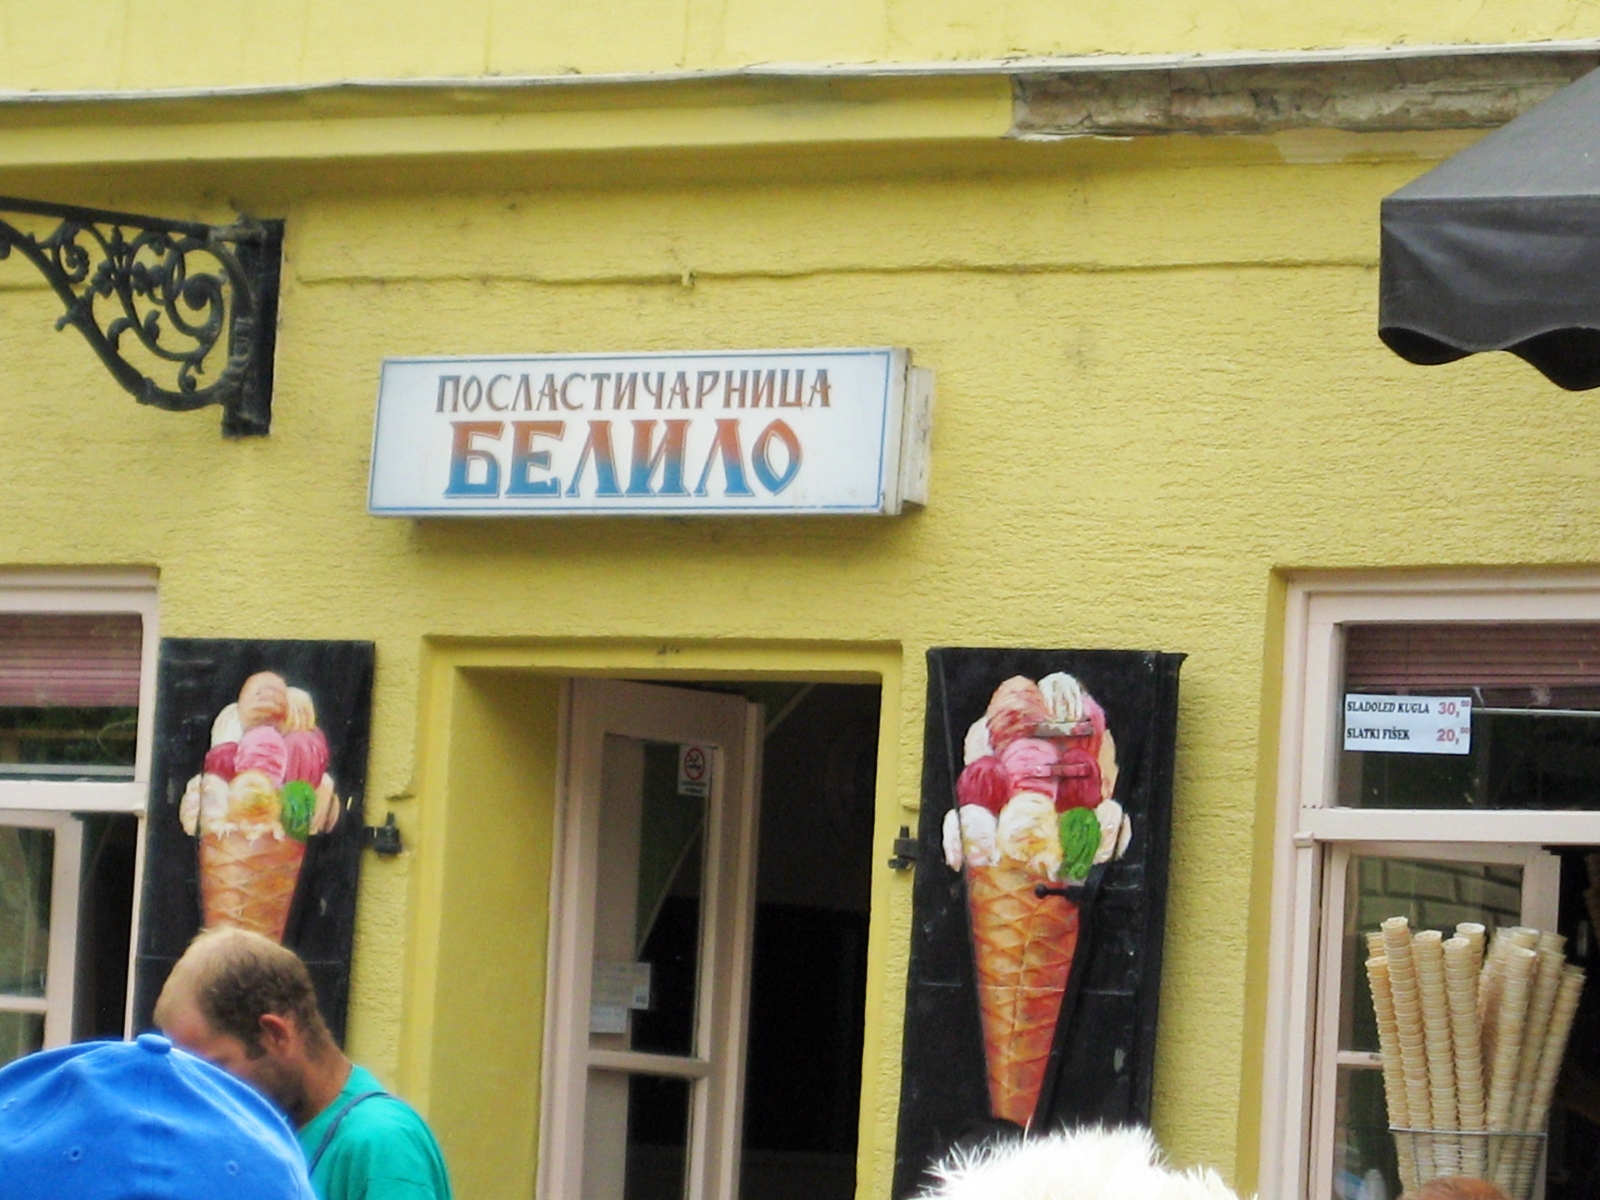 IceCream shop, Dunavska St, Novi Sad, Serbia